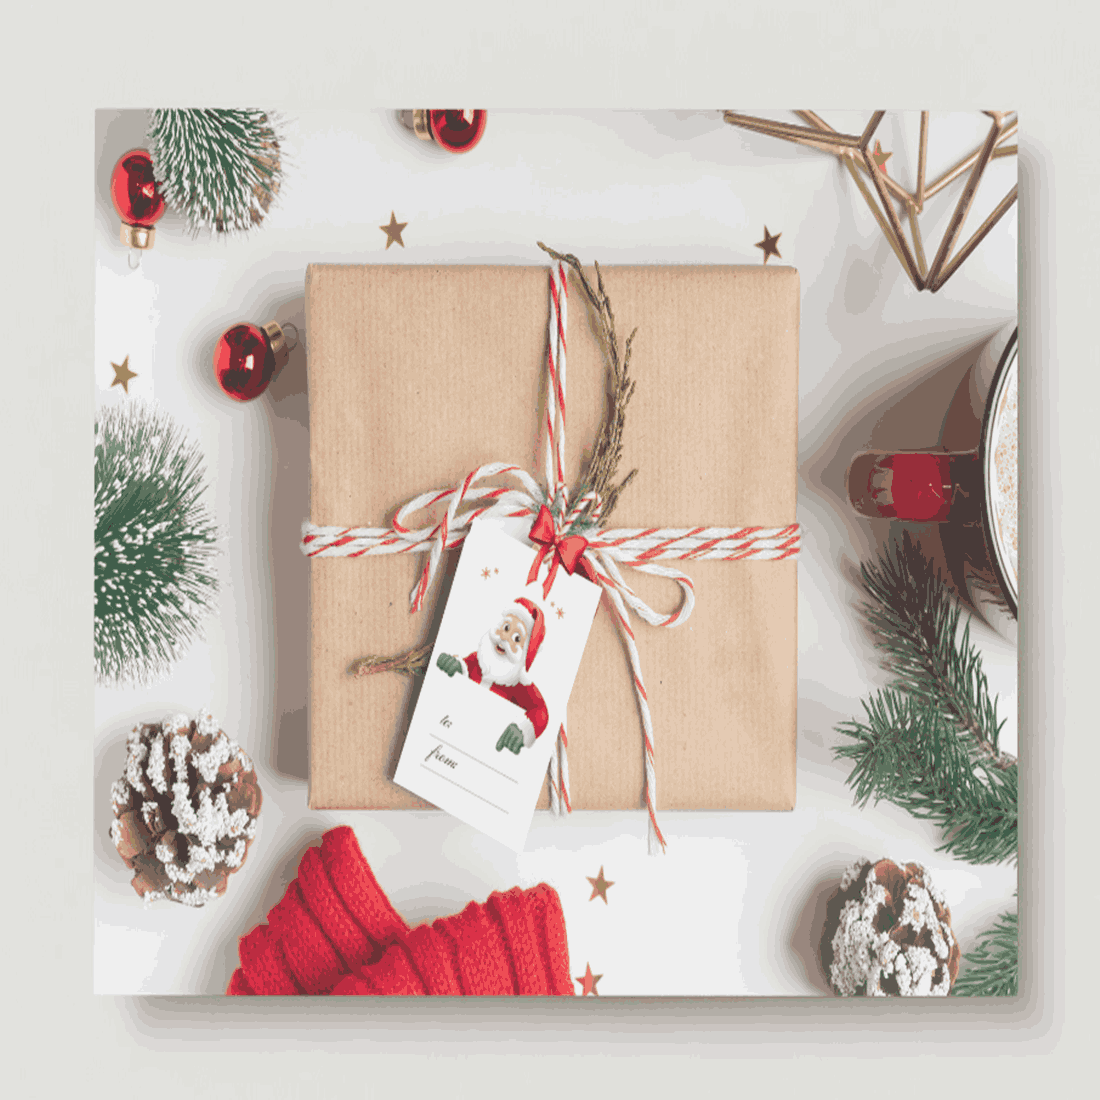 Printable Christmas Gift Tags, Holiday gift tags, DIY gift tags, Holiday gift wrapping, Assorted Christmas gift tags, Set of 18 Printable preview image.